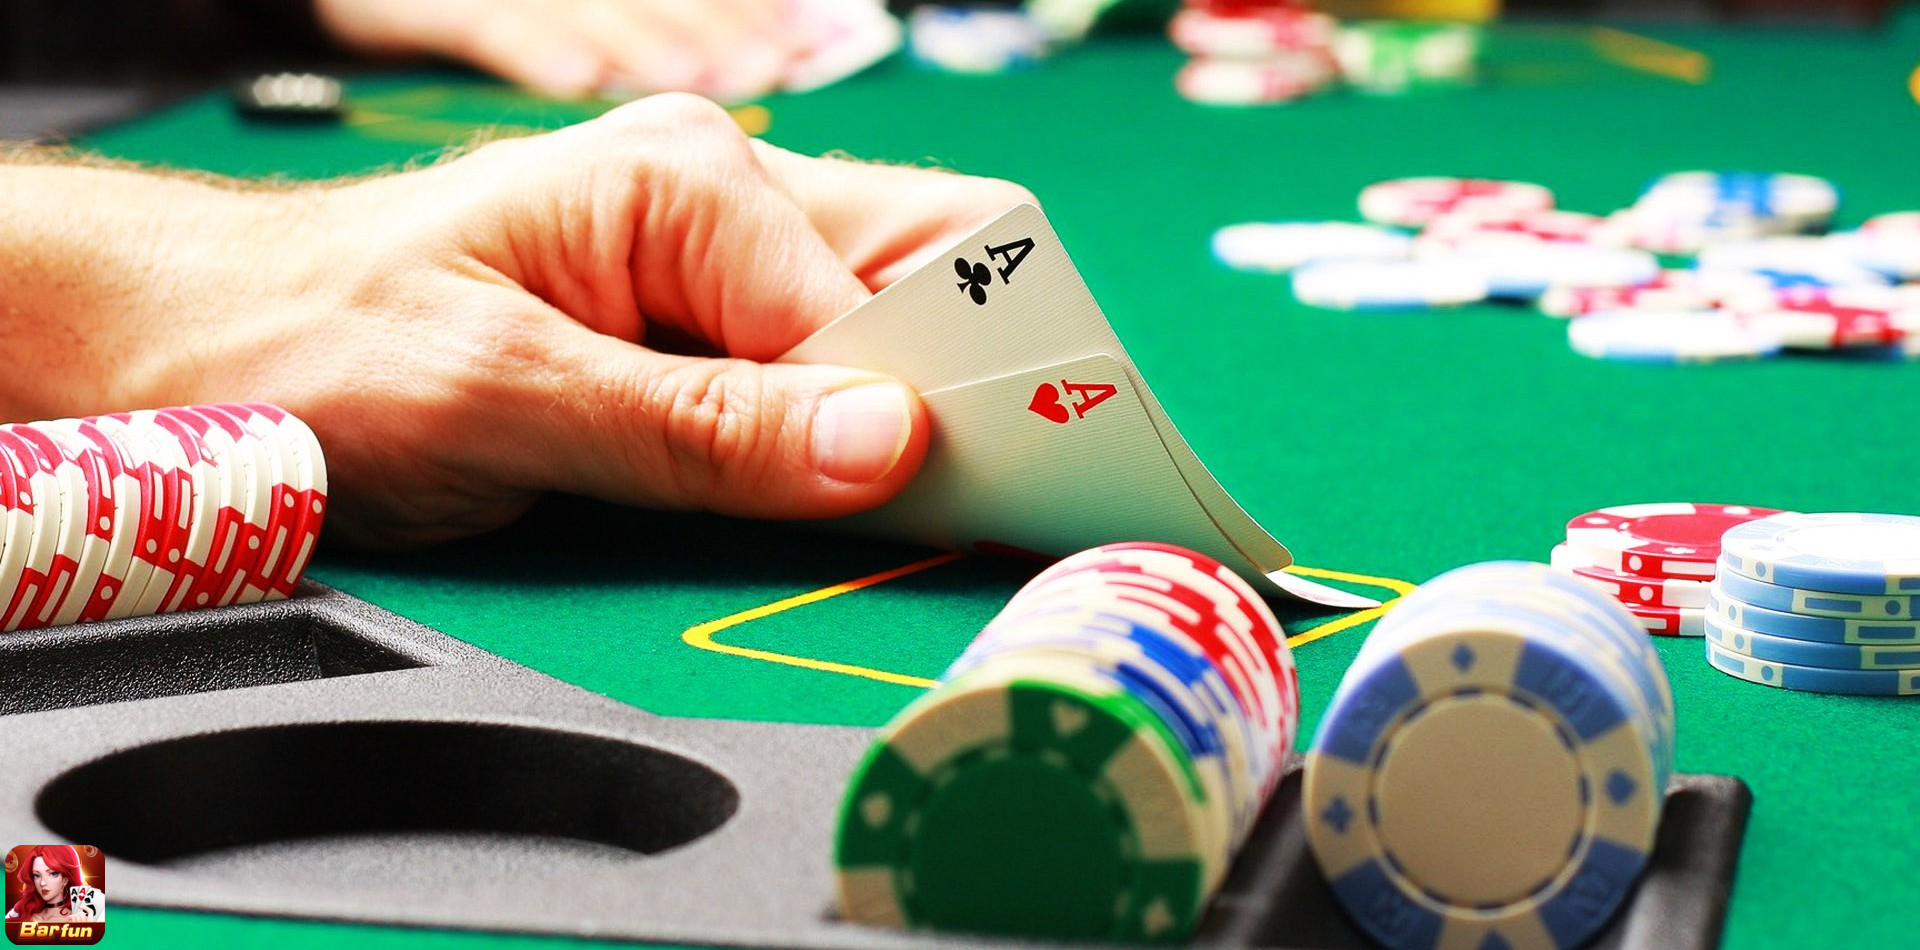 Chiến thuật chơi Poker là trò chơi chậm mà chắc